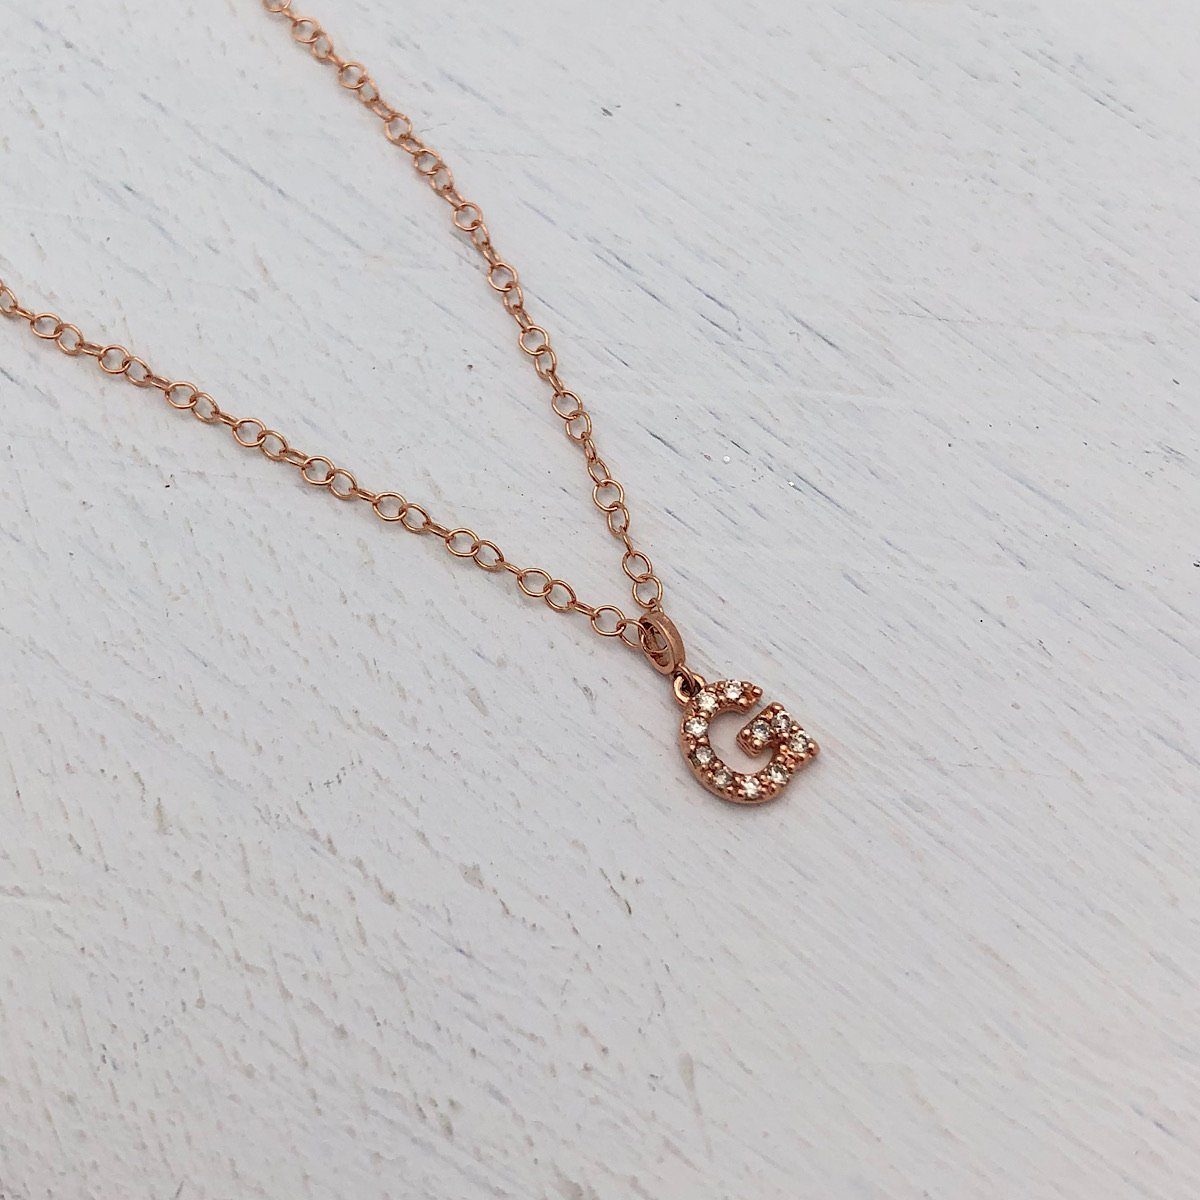 Petite Diamond Initial Necklace